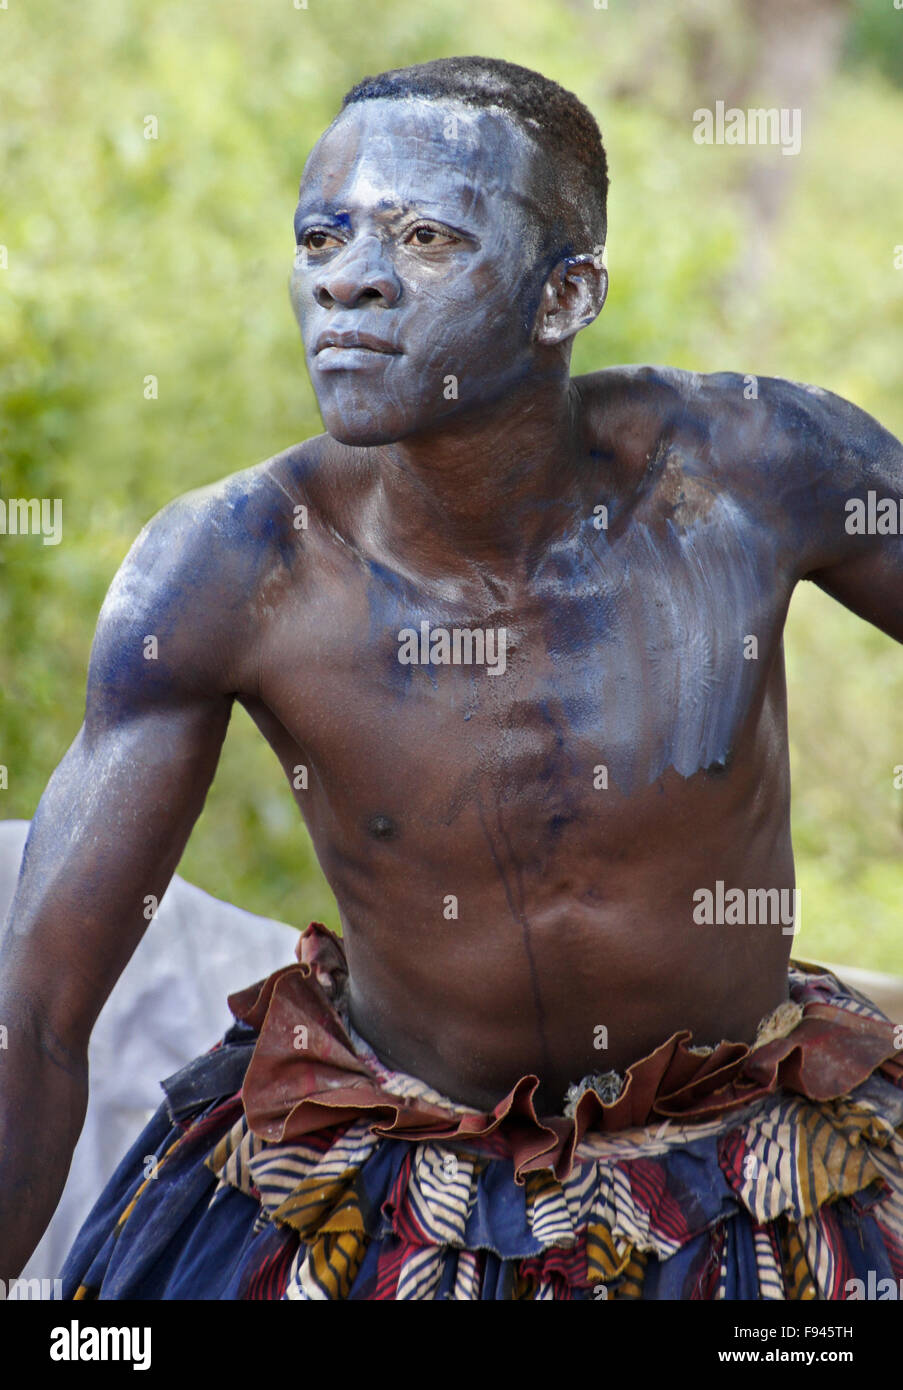 Vaudou (voodoo) Cérémonie pour Gambada divinité, où cet homme est possédé par un esprit, village près d'Abomey, Bénin Banque D'Images